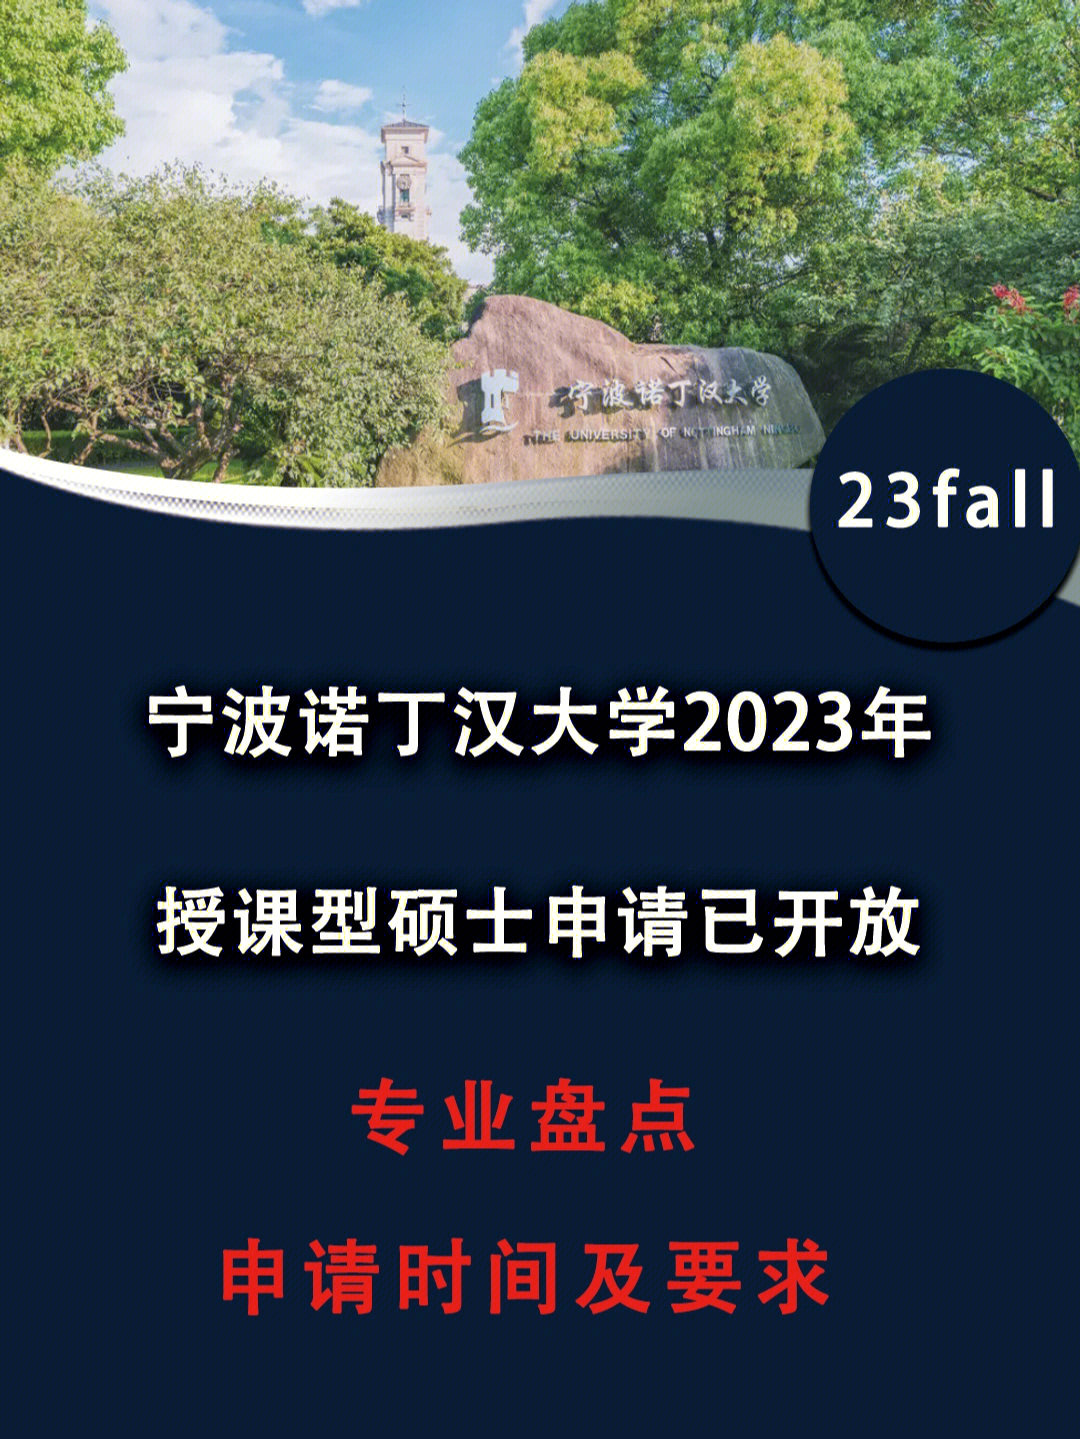 2023宁波诺丁汉大学硕士申请已经开放!(不用出境,可留服认证!